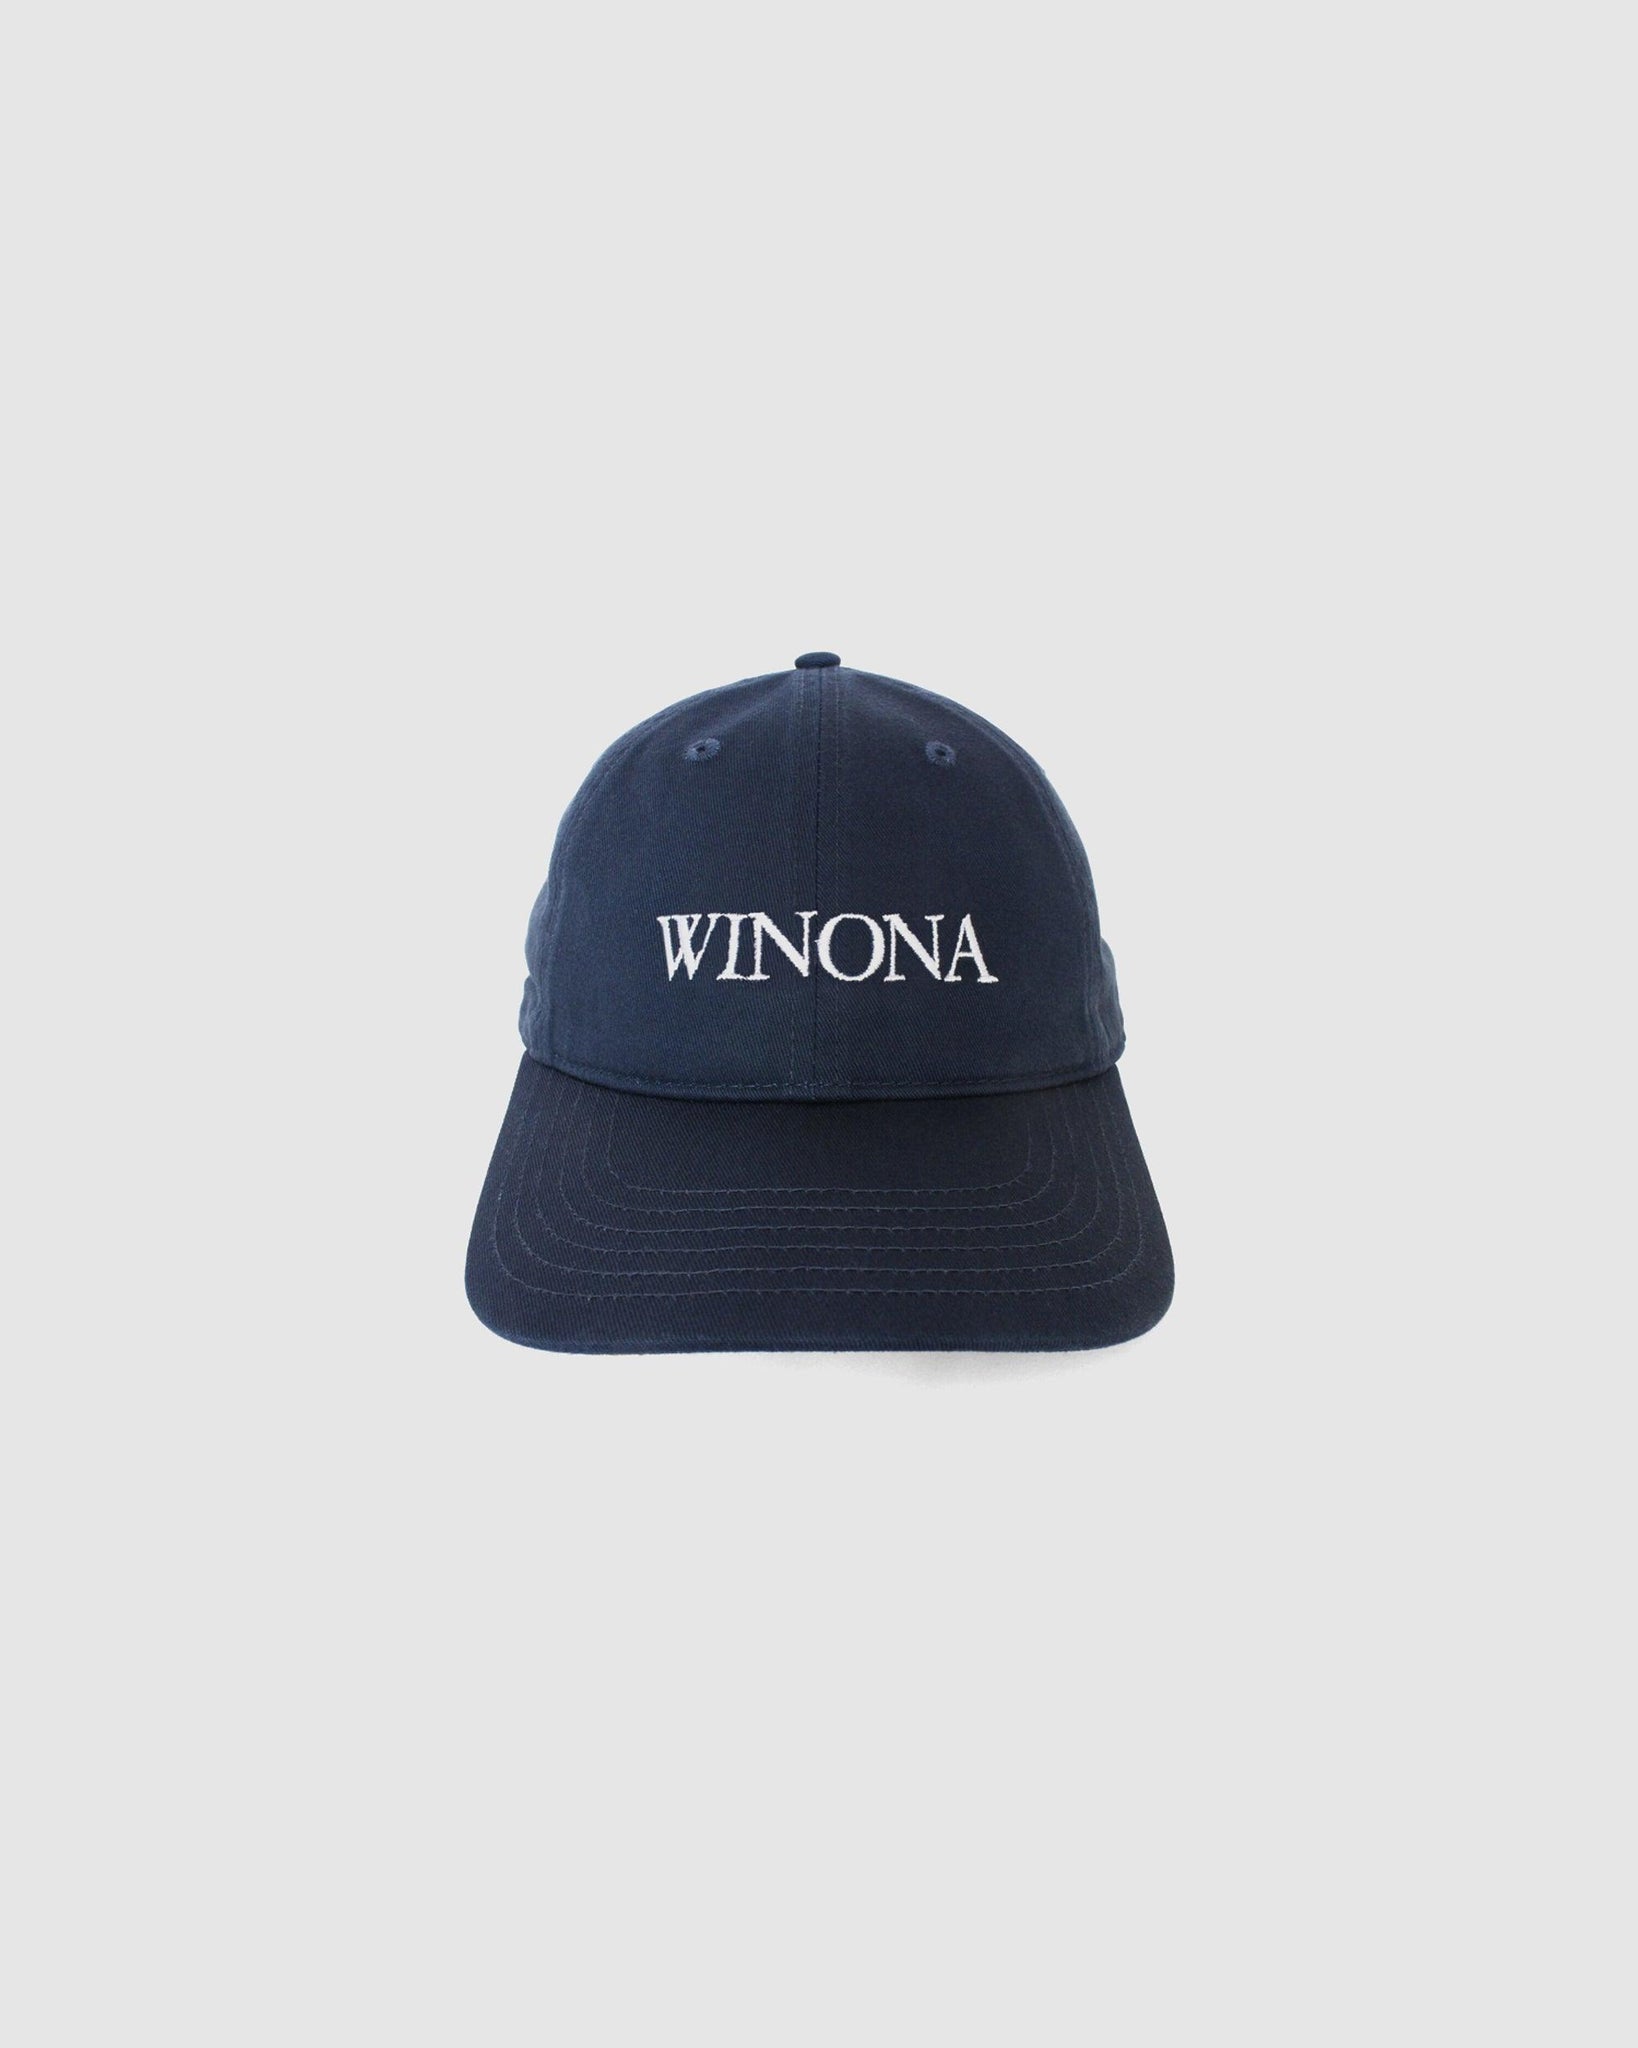 IDEA BOOKS LTD CAP 『WINONA』-